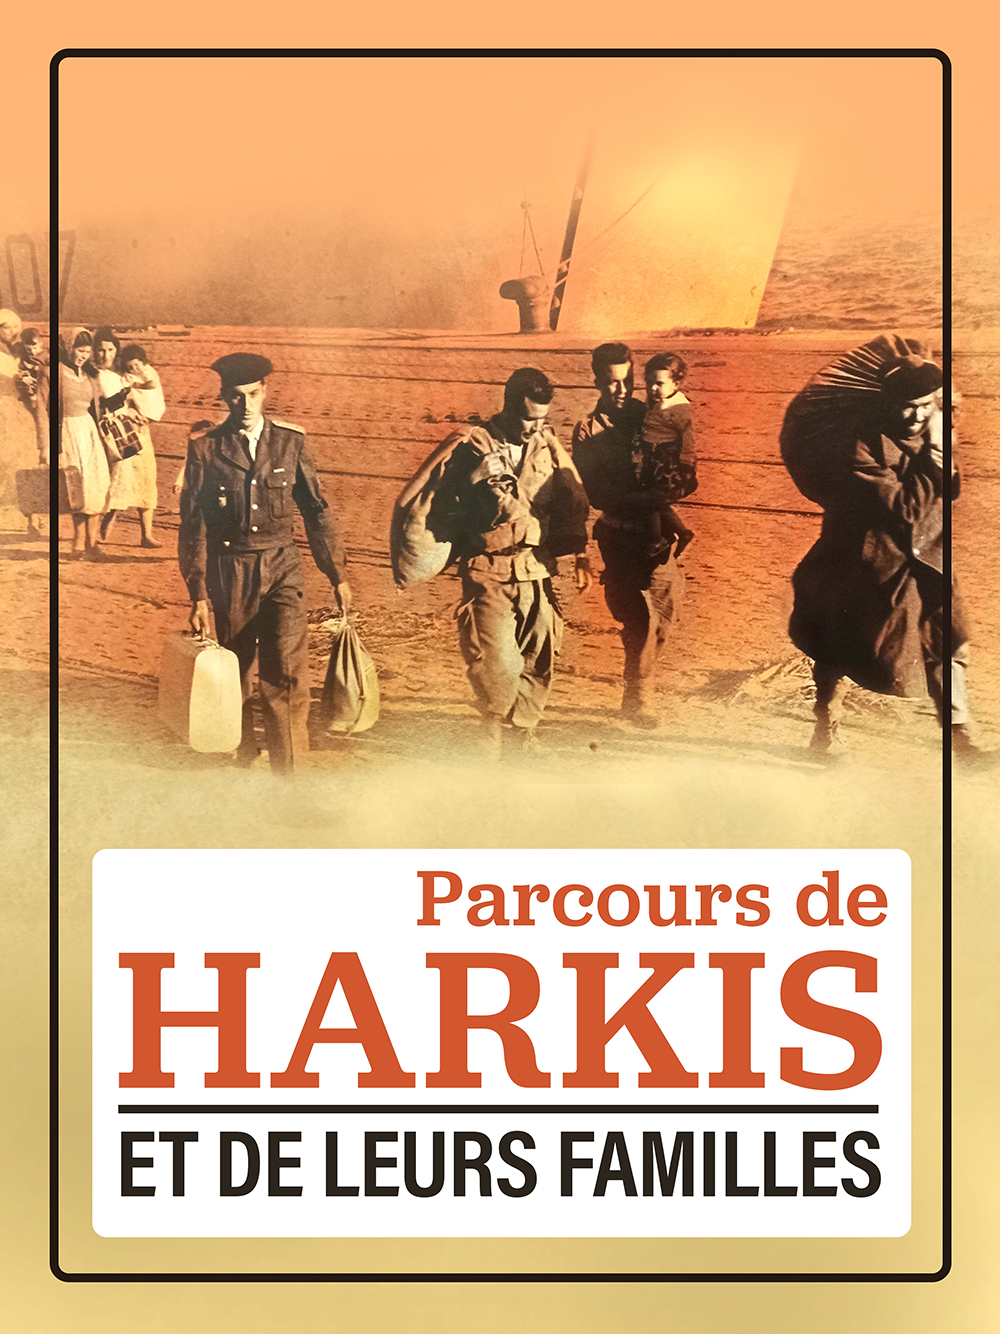 Ausstellung | Harkis-Kurs